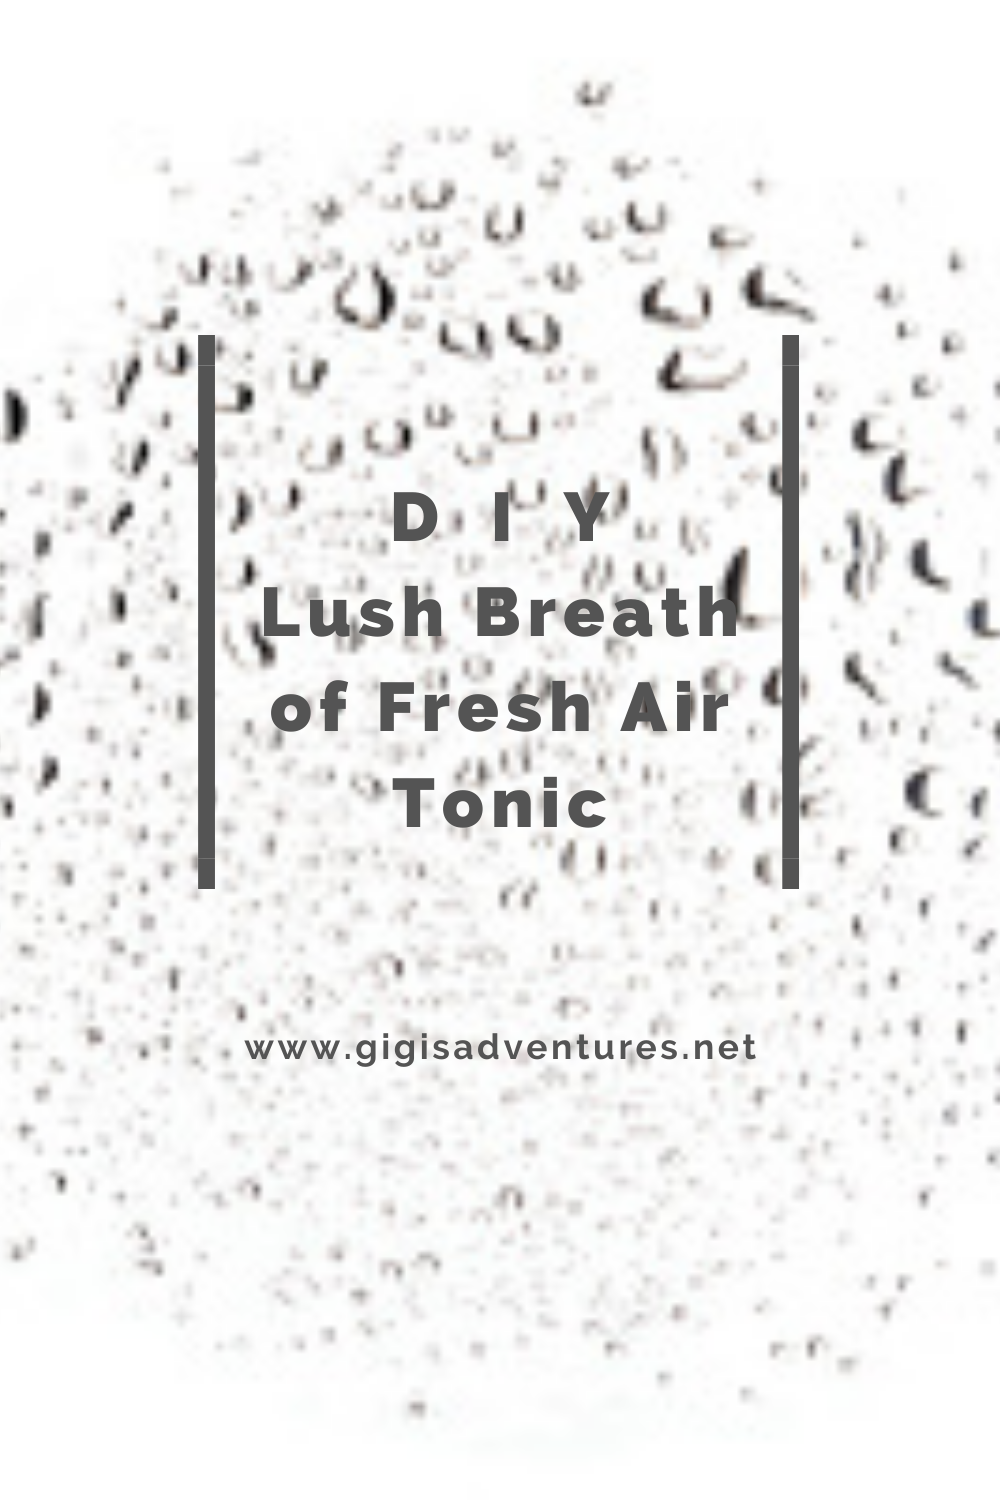 DIY Lush Breath of Fresh Air Tonic - Lush Breath of Fresh Air Copycat